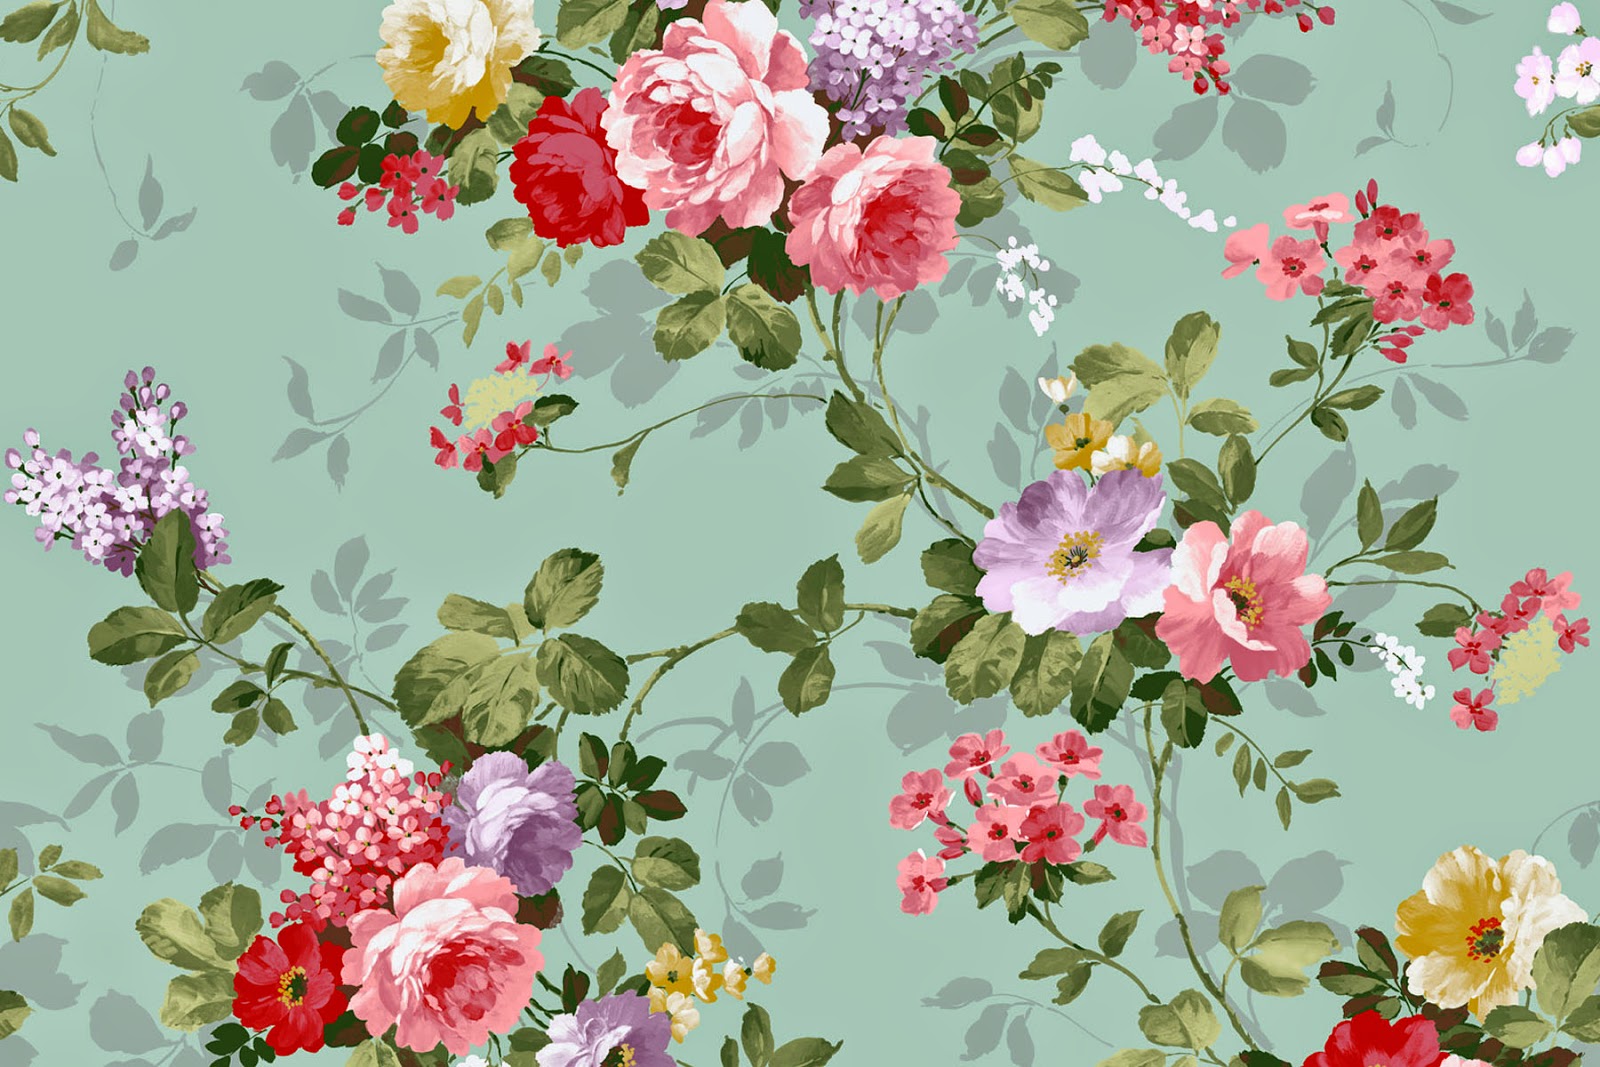 floral wallpaper for walls,flower,prickly rose,floral design,pattern,pink